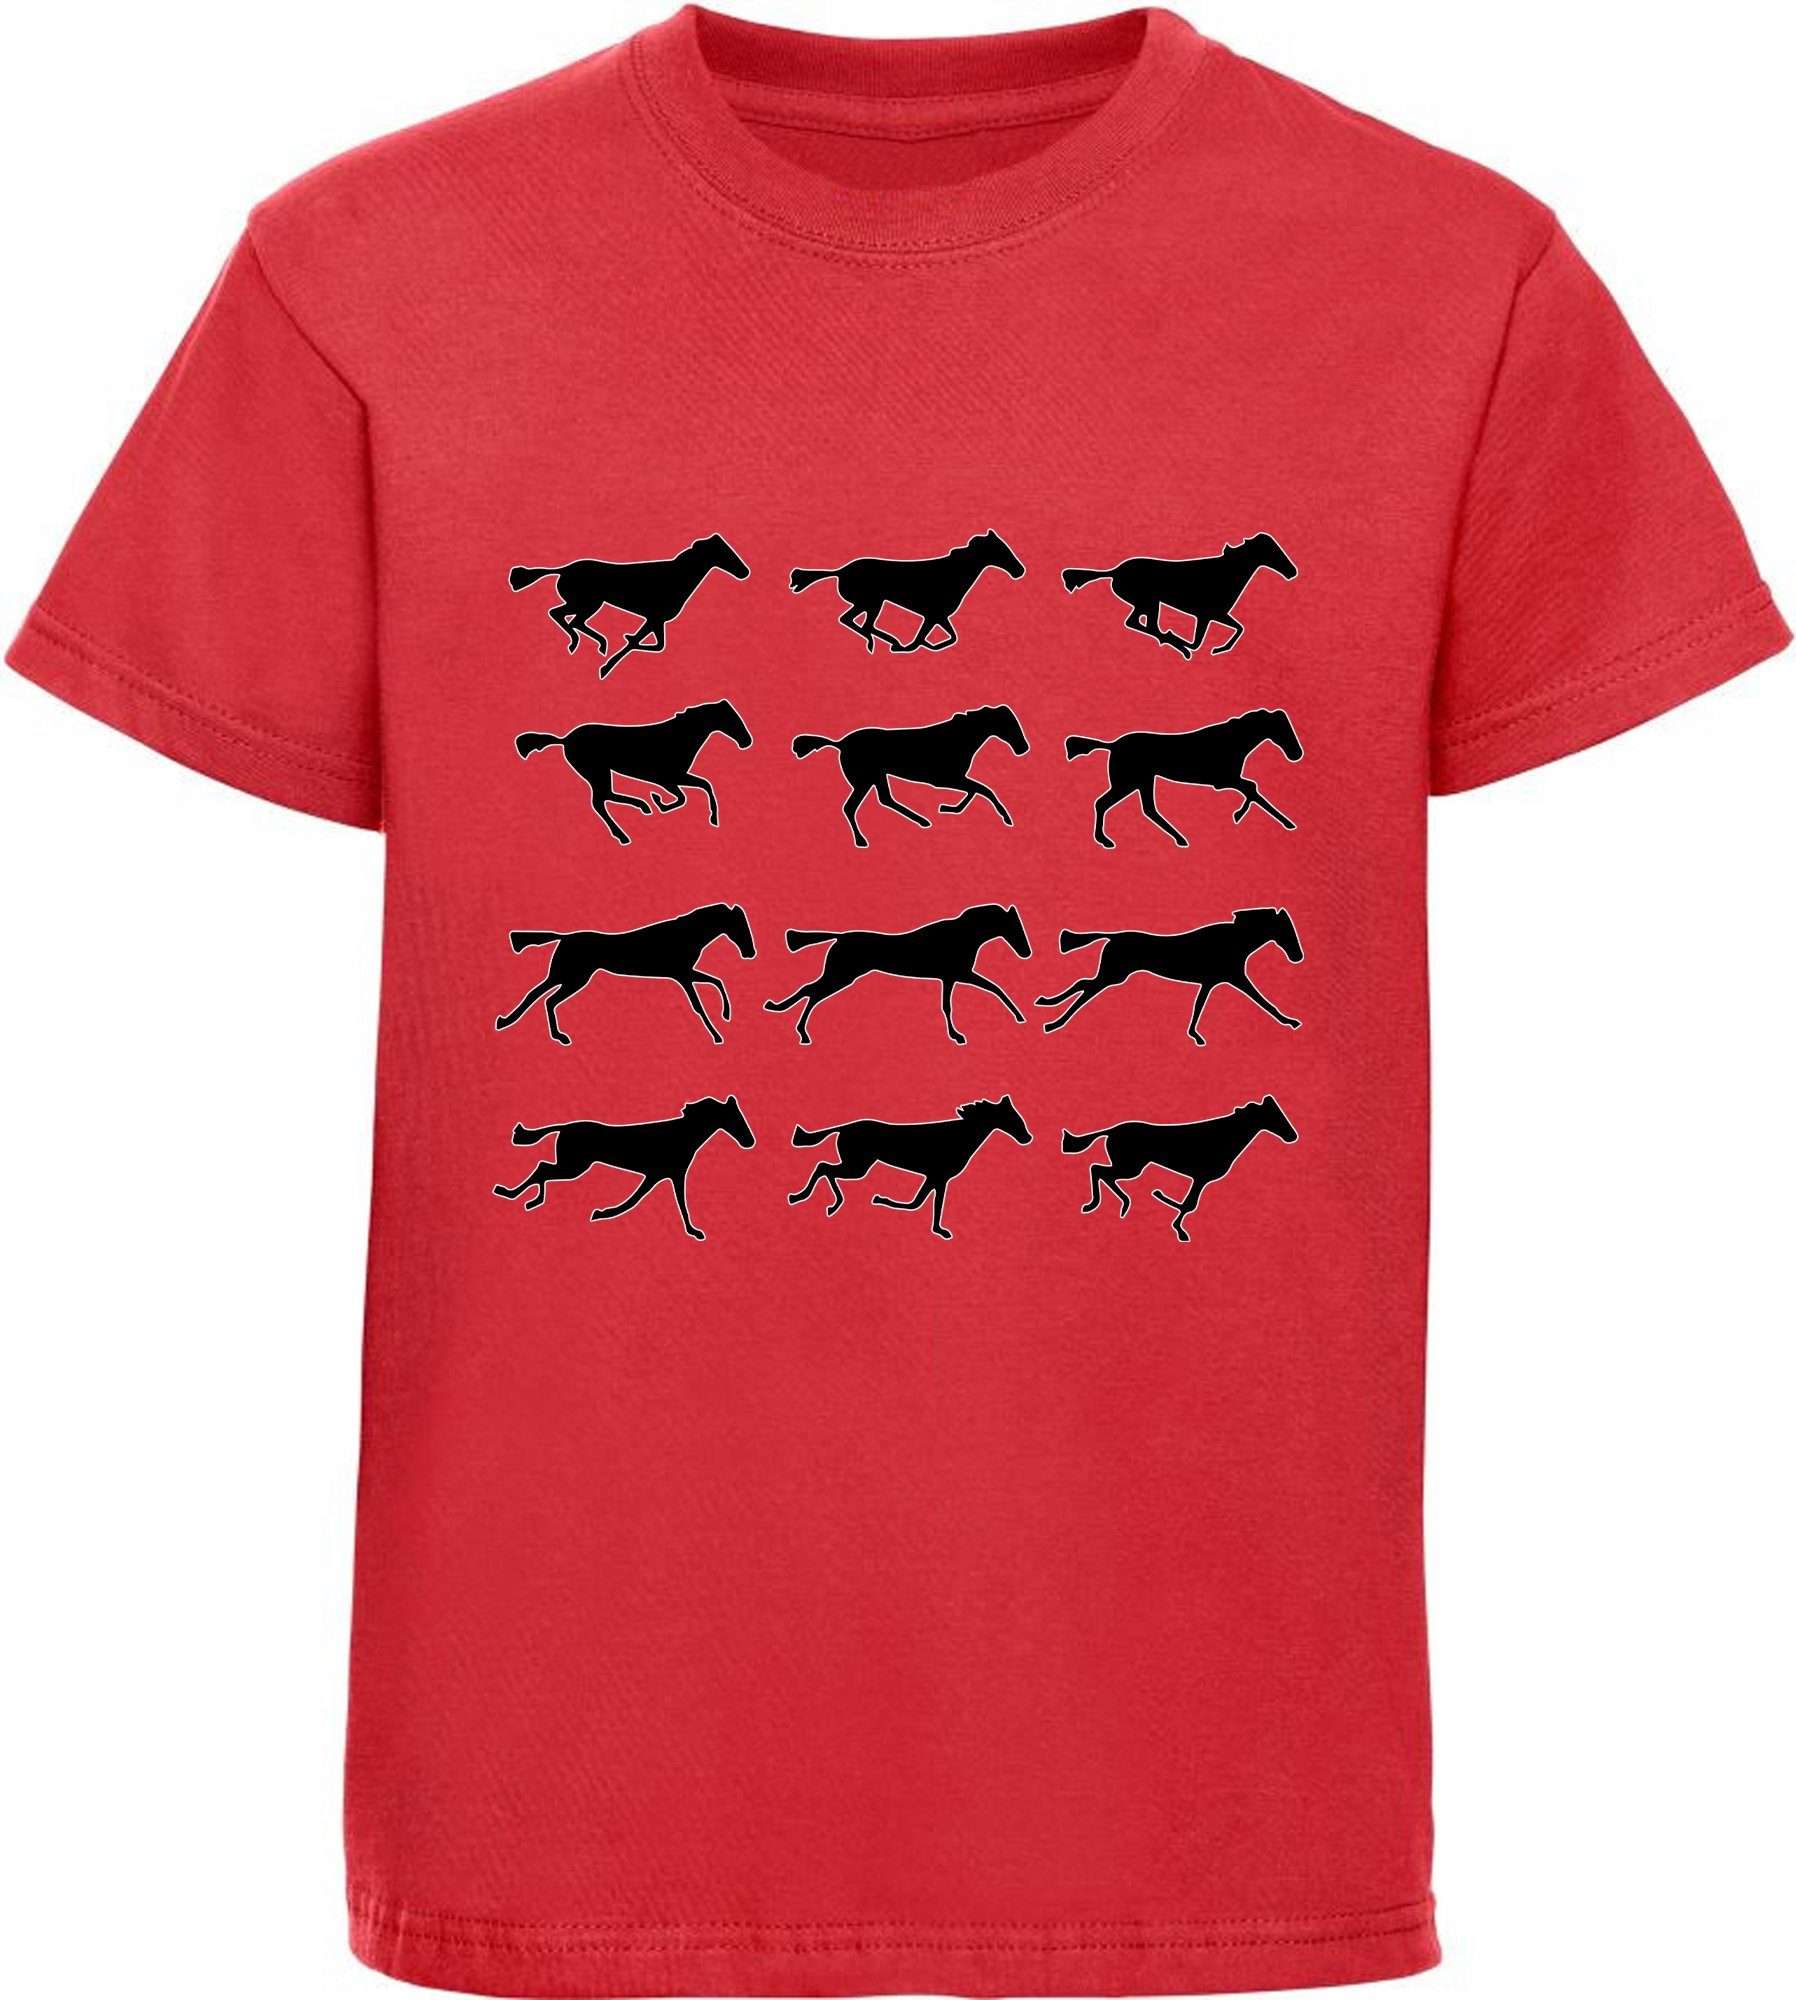 mit - T-Shirt bedrucktes Mädchen Silhouetten Print-Shirt Pferden von MyDesign24 rot Baumwollshirt Aufdruck, i173